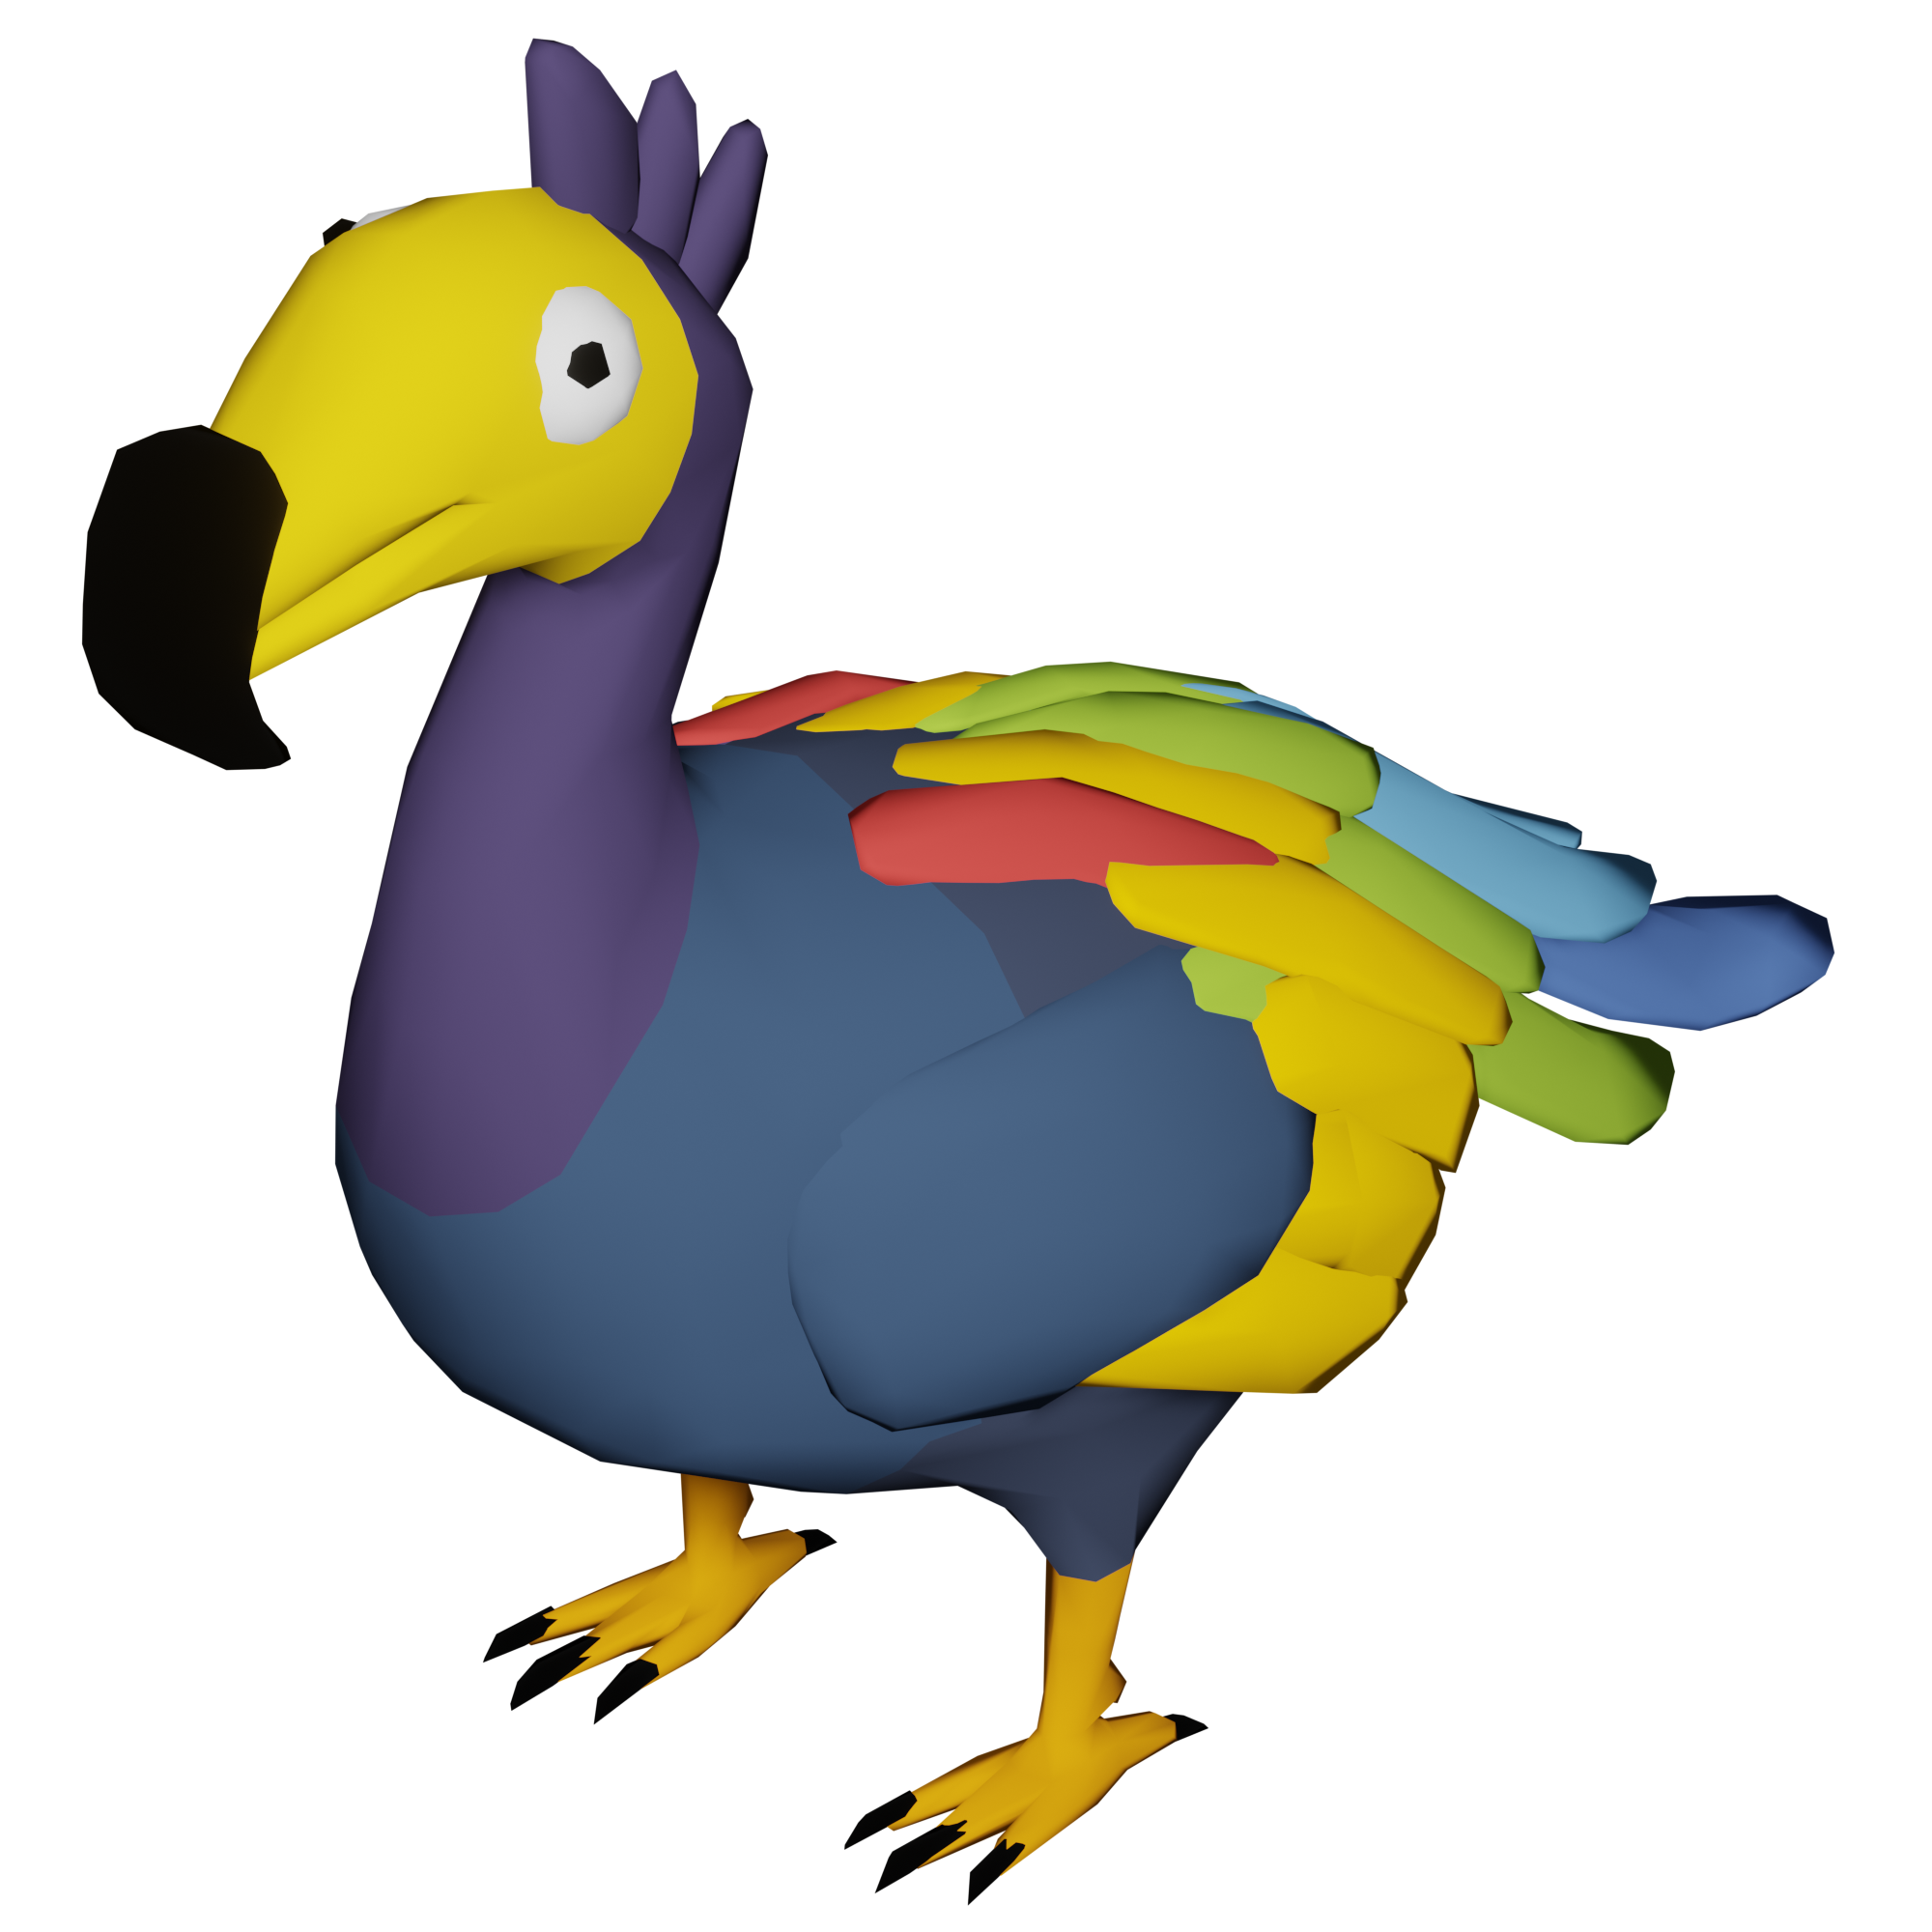 The Dodo Bird